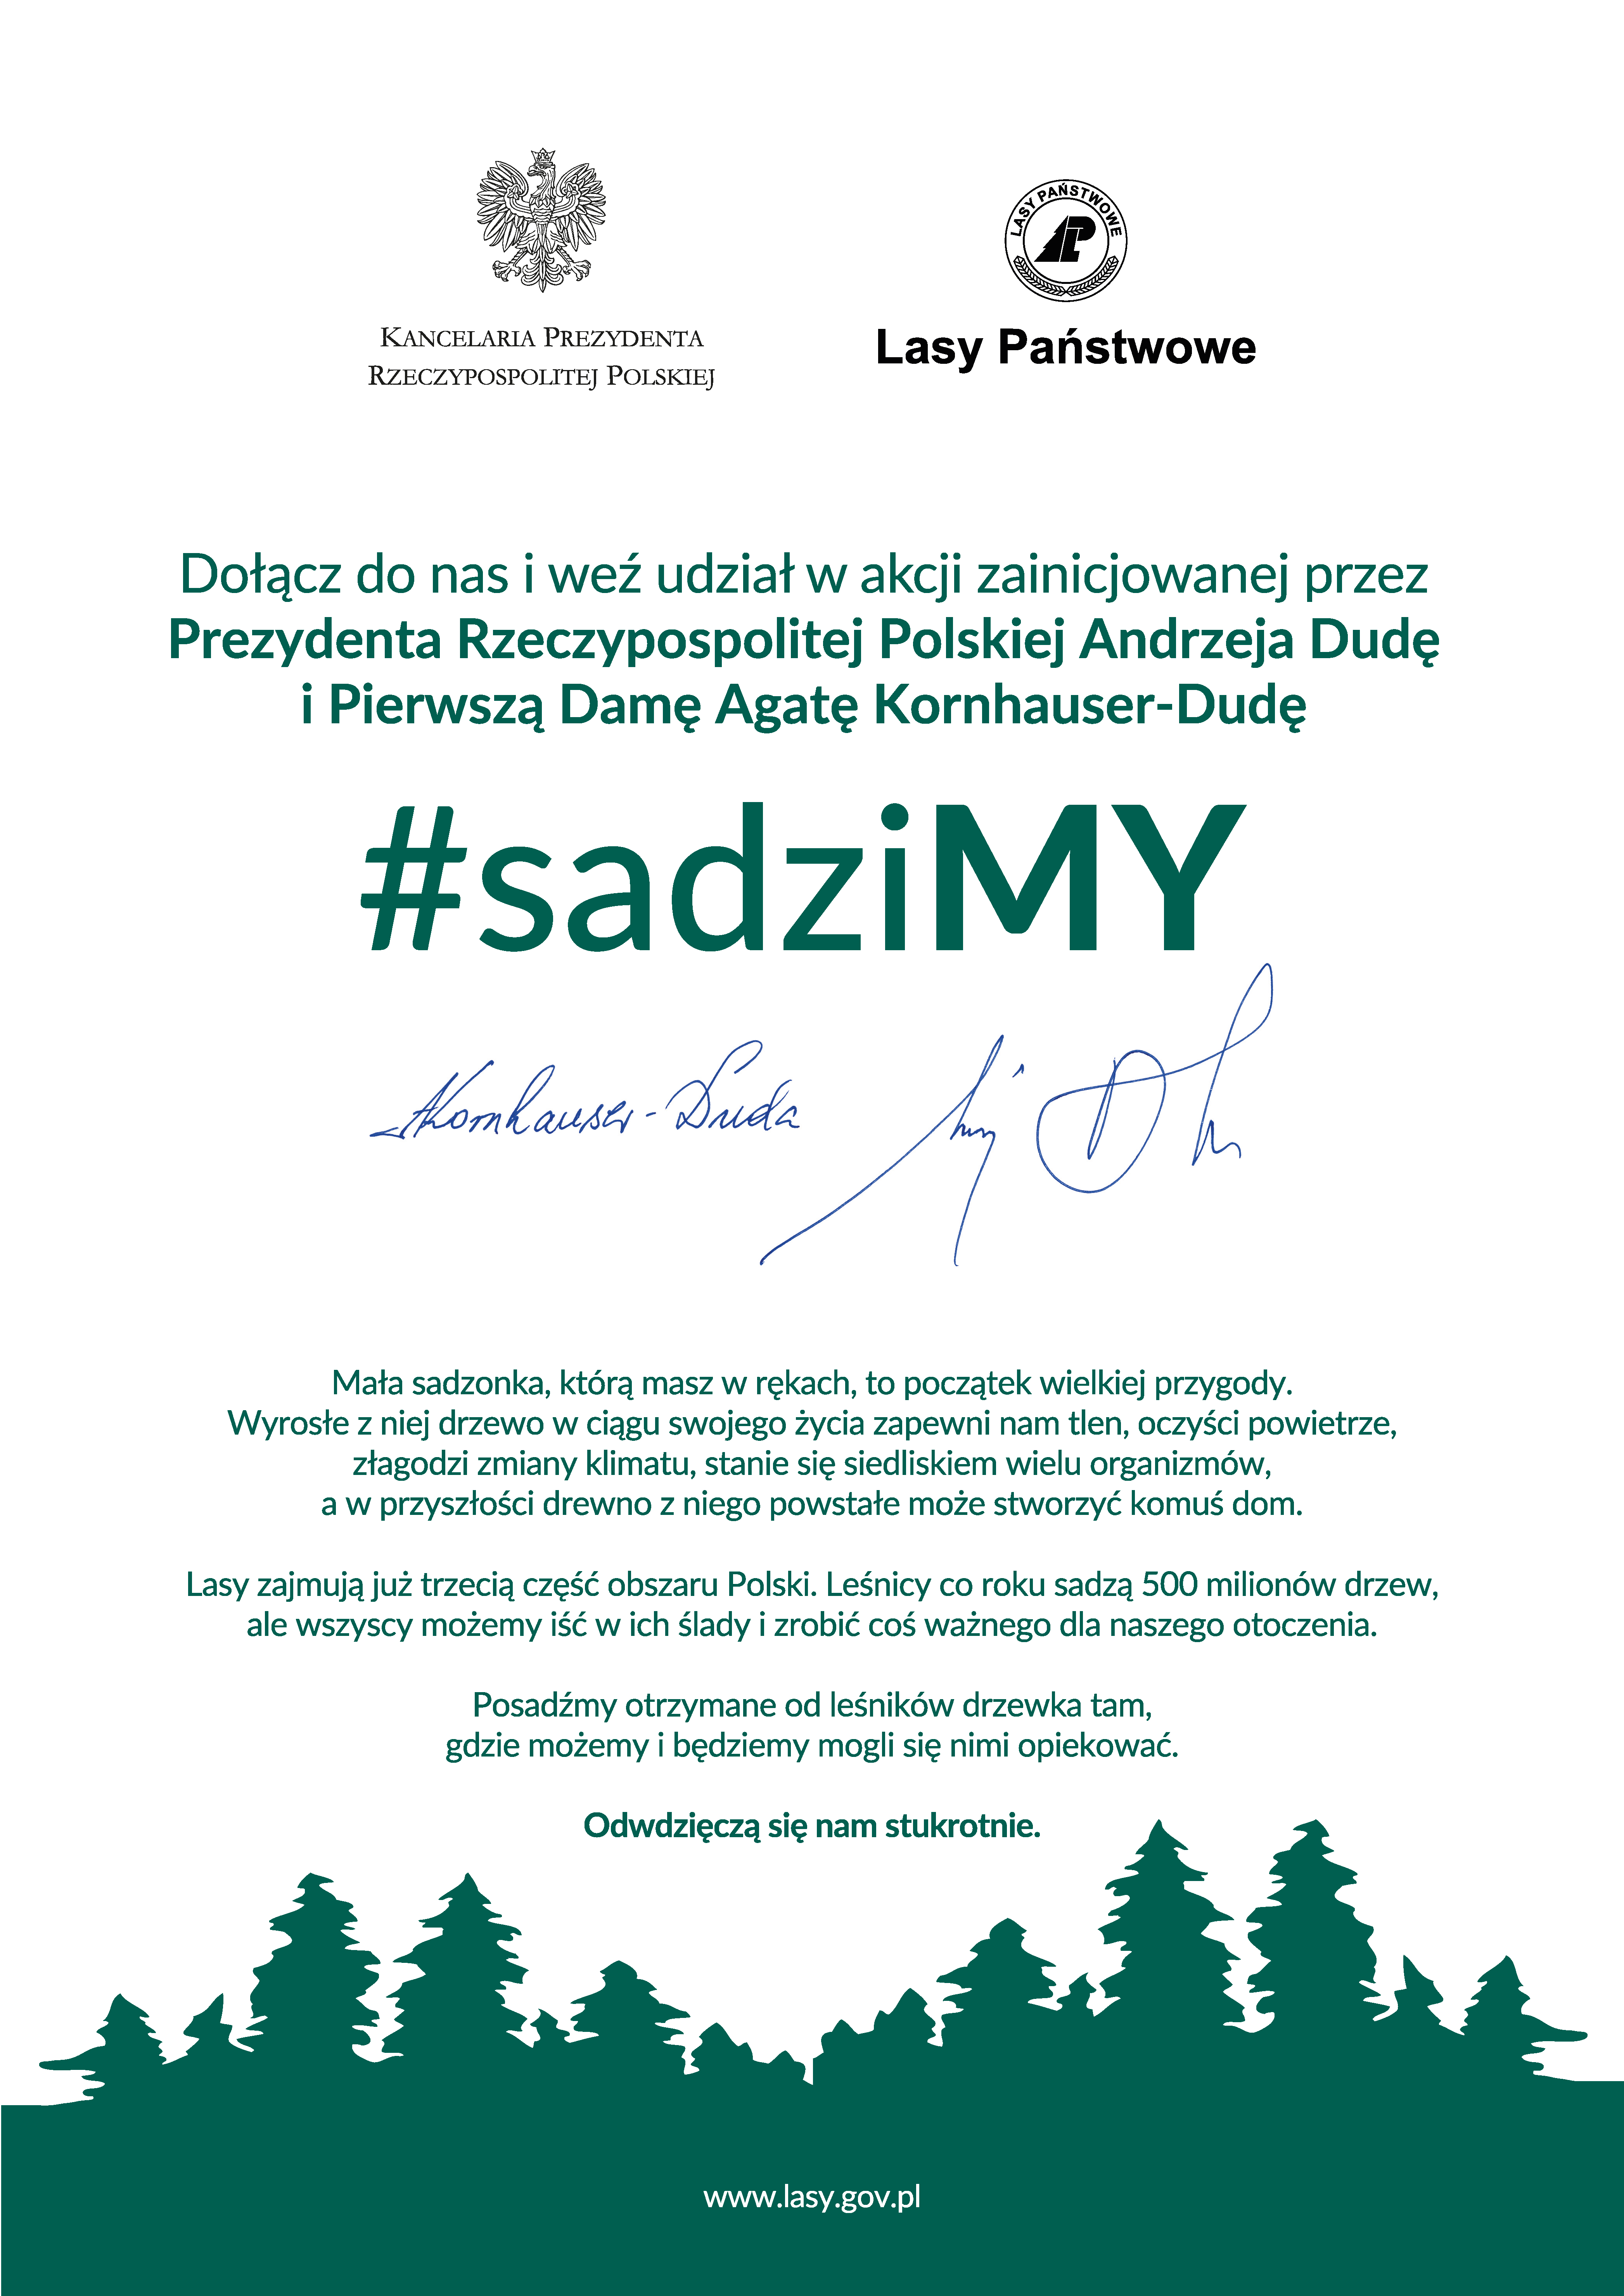 Zdjęcie przedstawia zaproszenie do akcji #sadziMY podpisane przez parę prezydencką